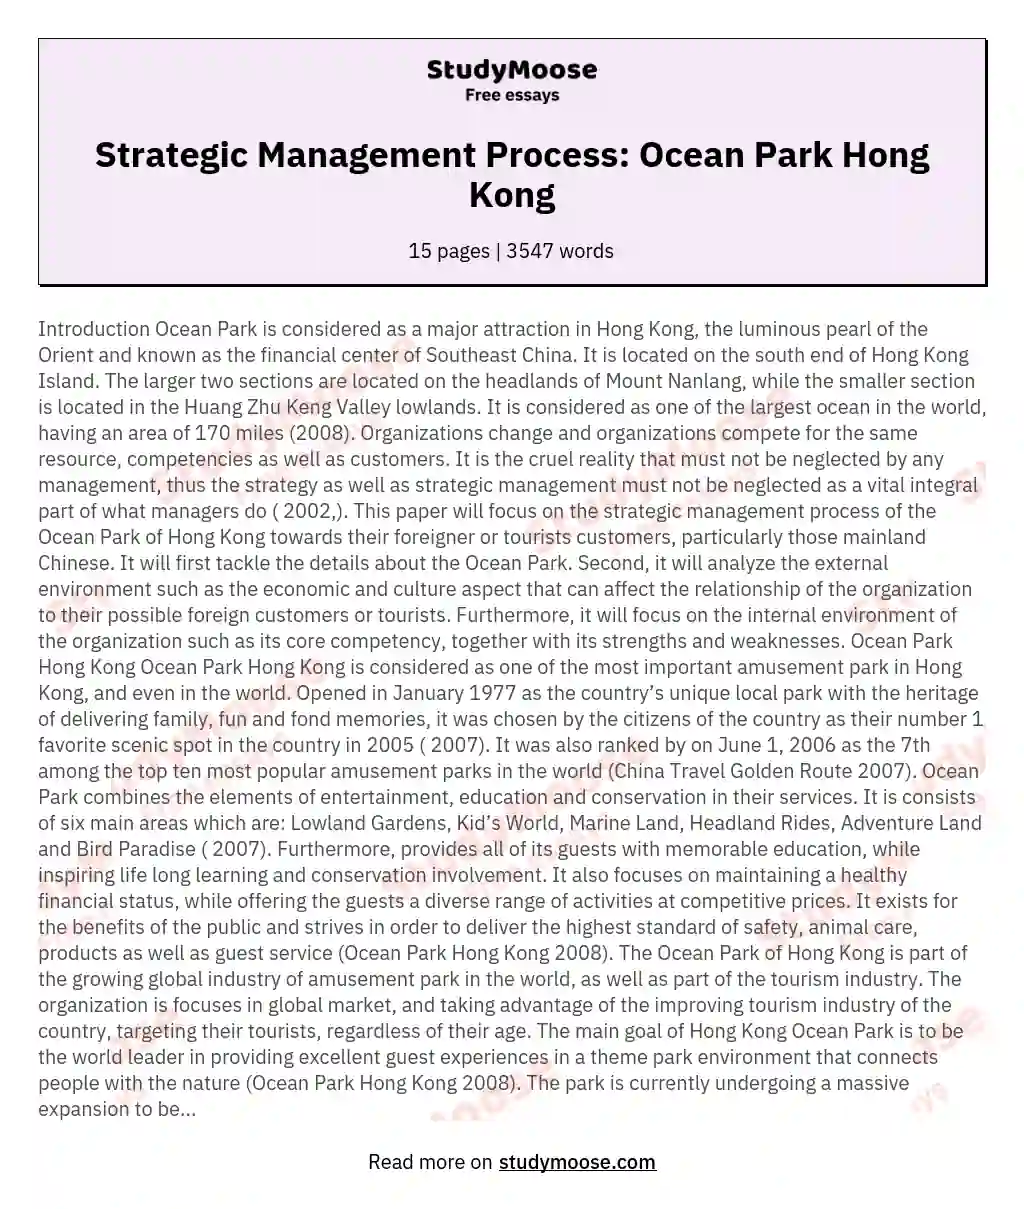 Strategic Management Process: Ocean Park Hong Kong